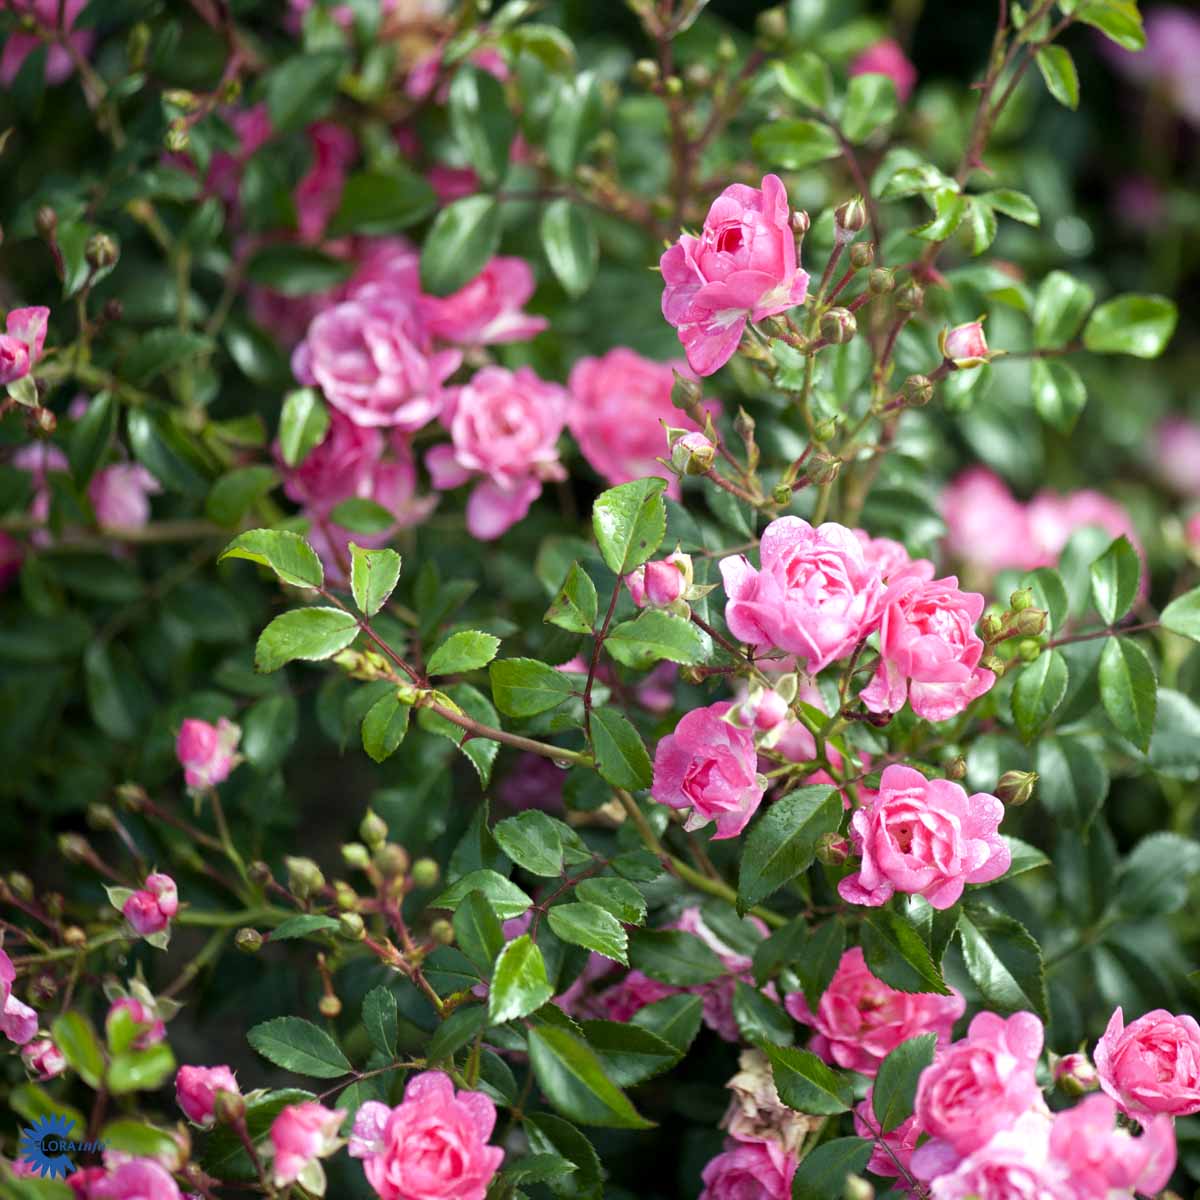 verdens mest populære bunddækkende rose som er flot lyserød eller mørk rosa